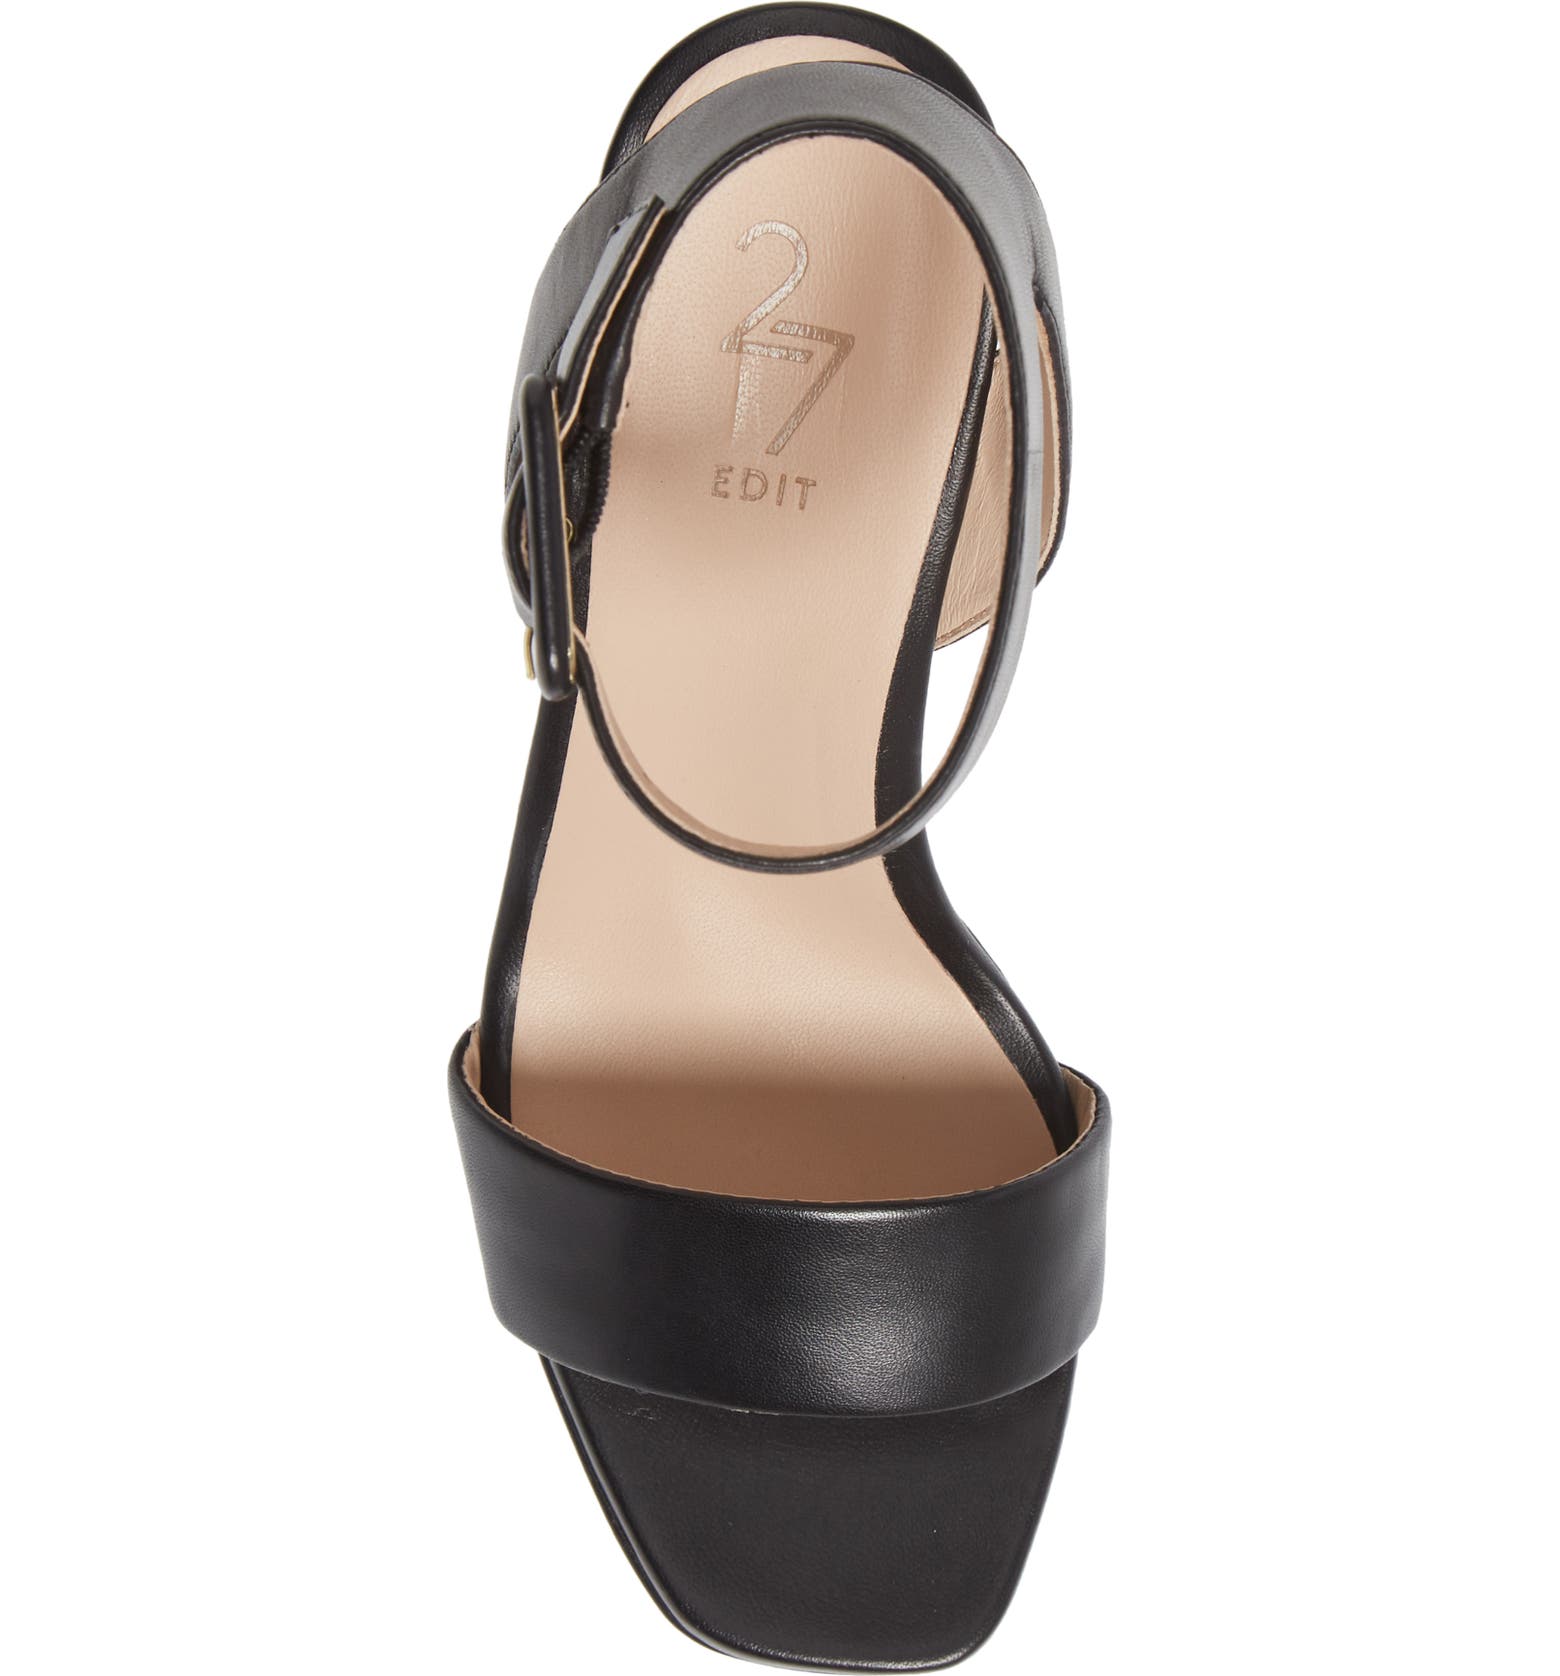 27 EDIT Naturalizer Jaselle Platform High Heel Sandal (Women) | Nordstrom